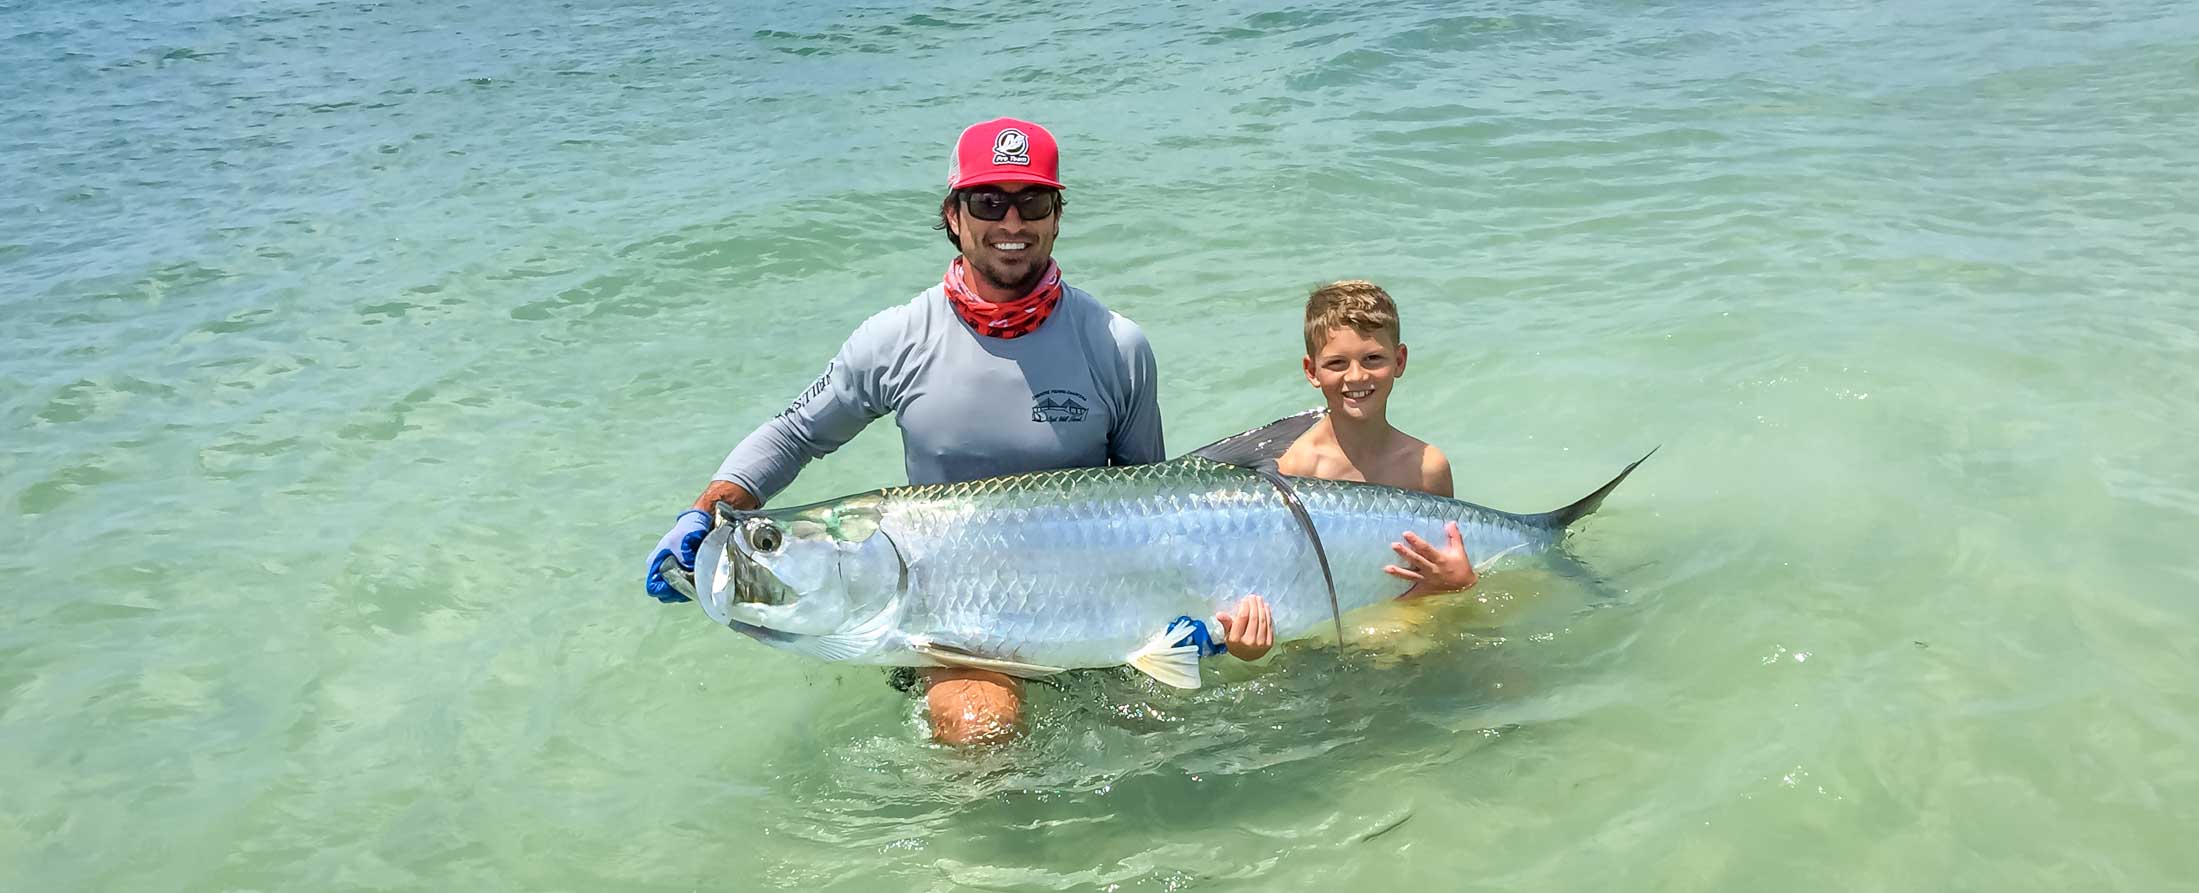 Tampa Tarpon Fishing Charter - Anglers with Tarpon